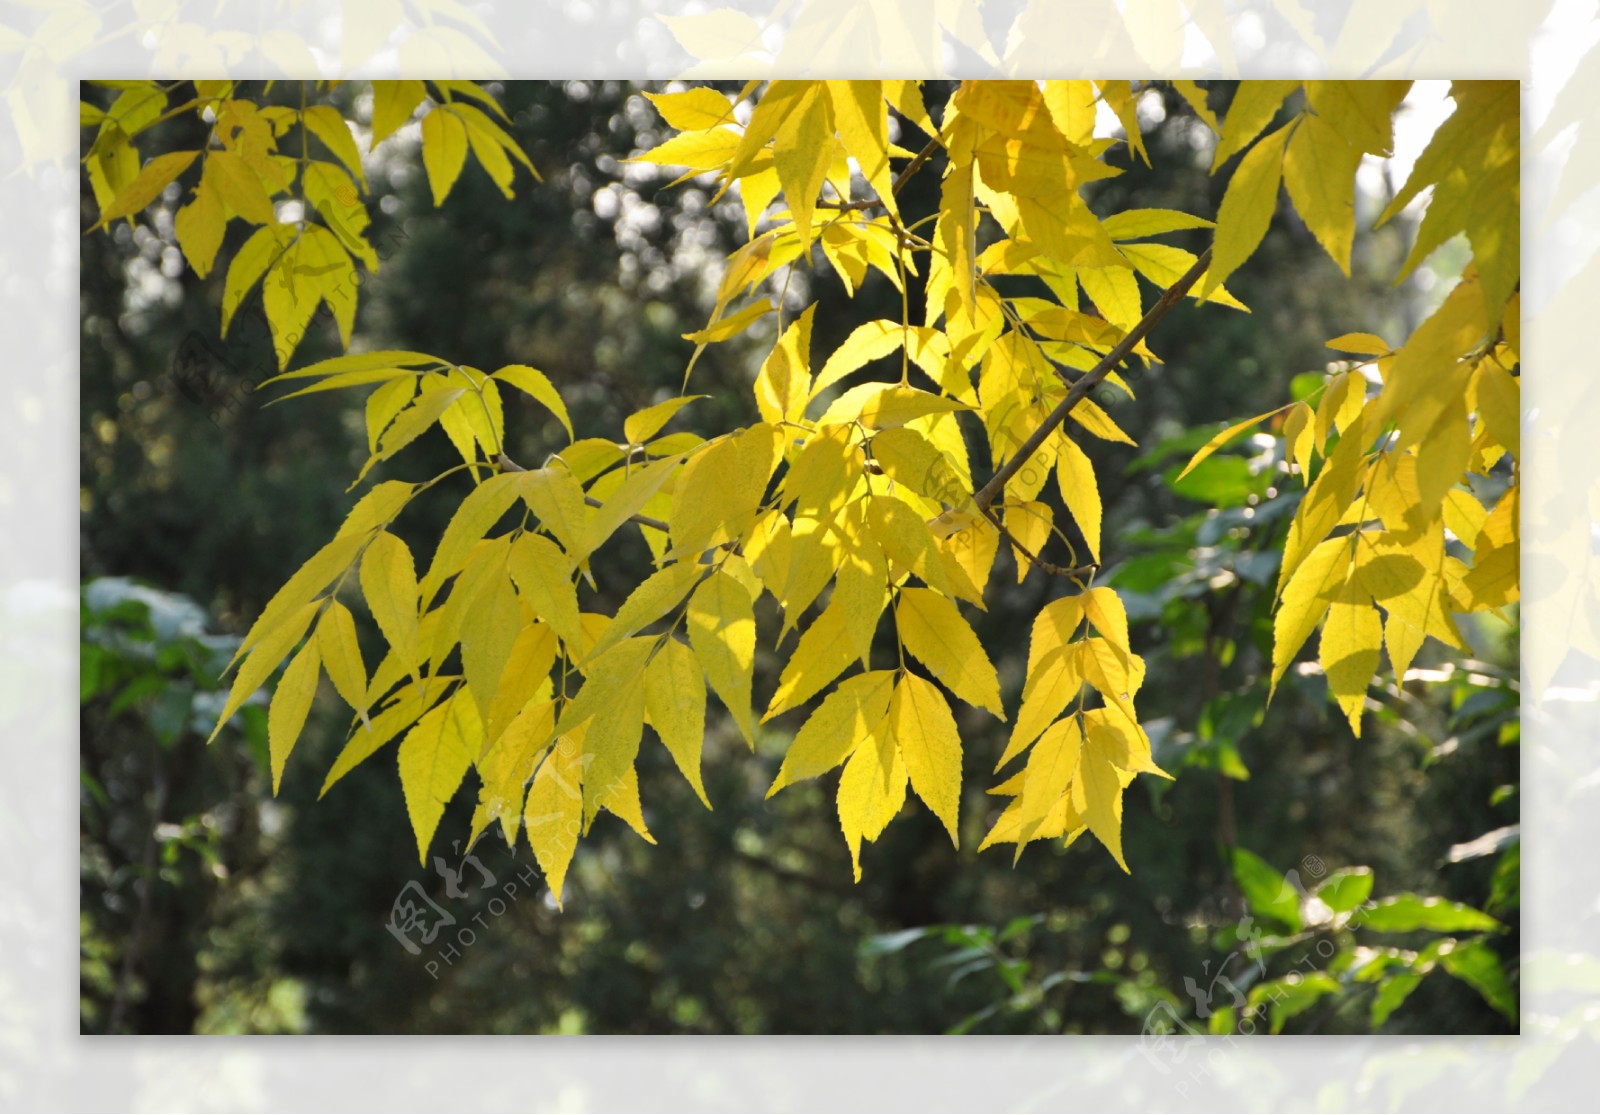 秋天的白蜡满树金黄